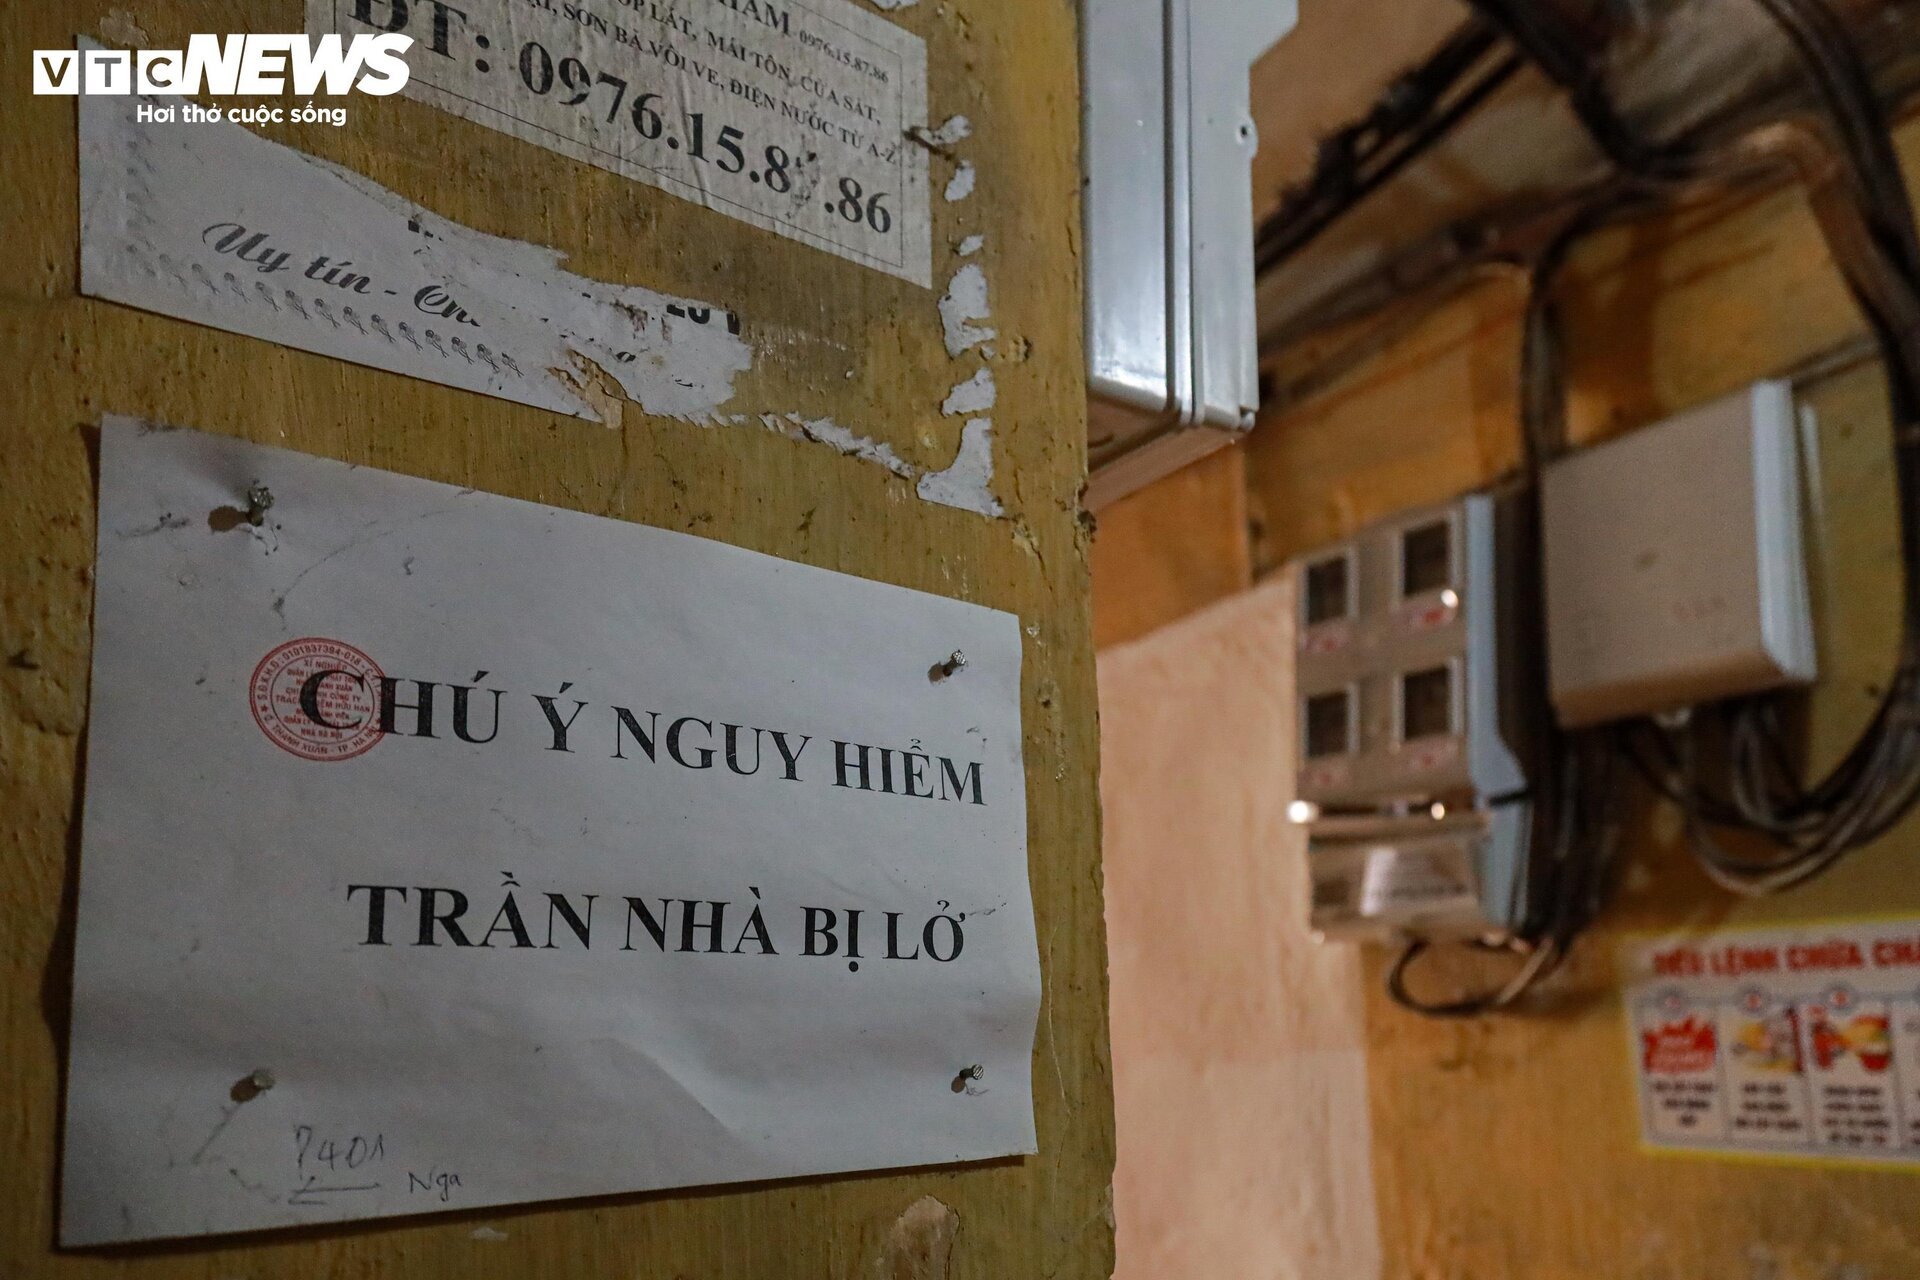 Bên trong ký túc xá cũ ở Hà Nội mỗi lần mưa là dột, nước tràn vào nhà - Ảnh 11.